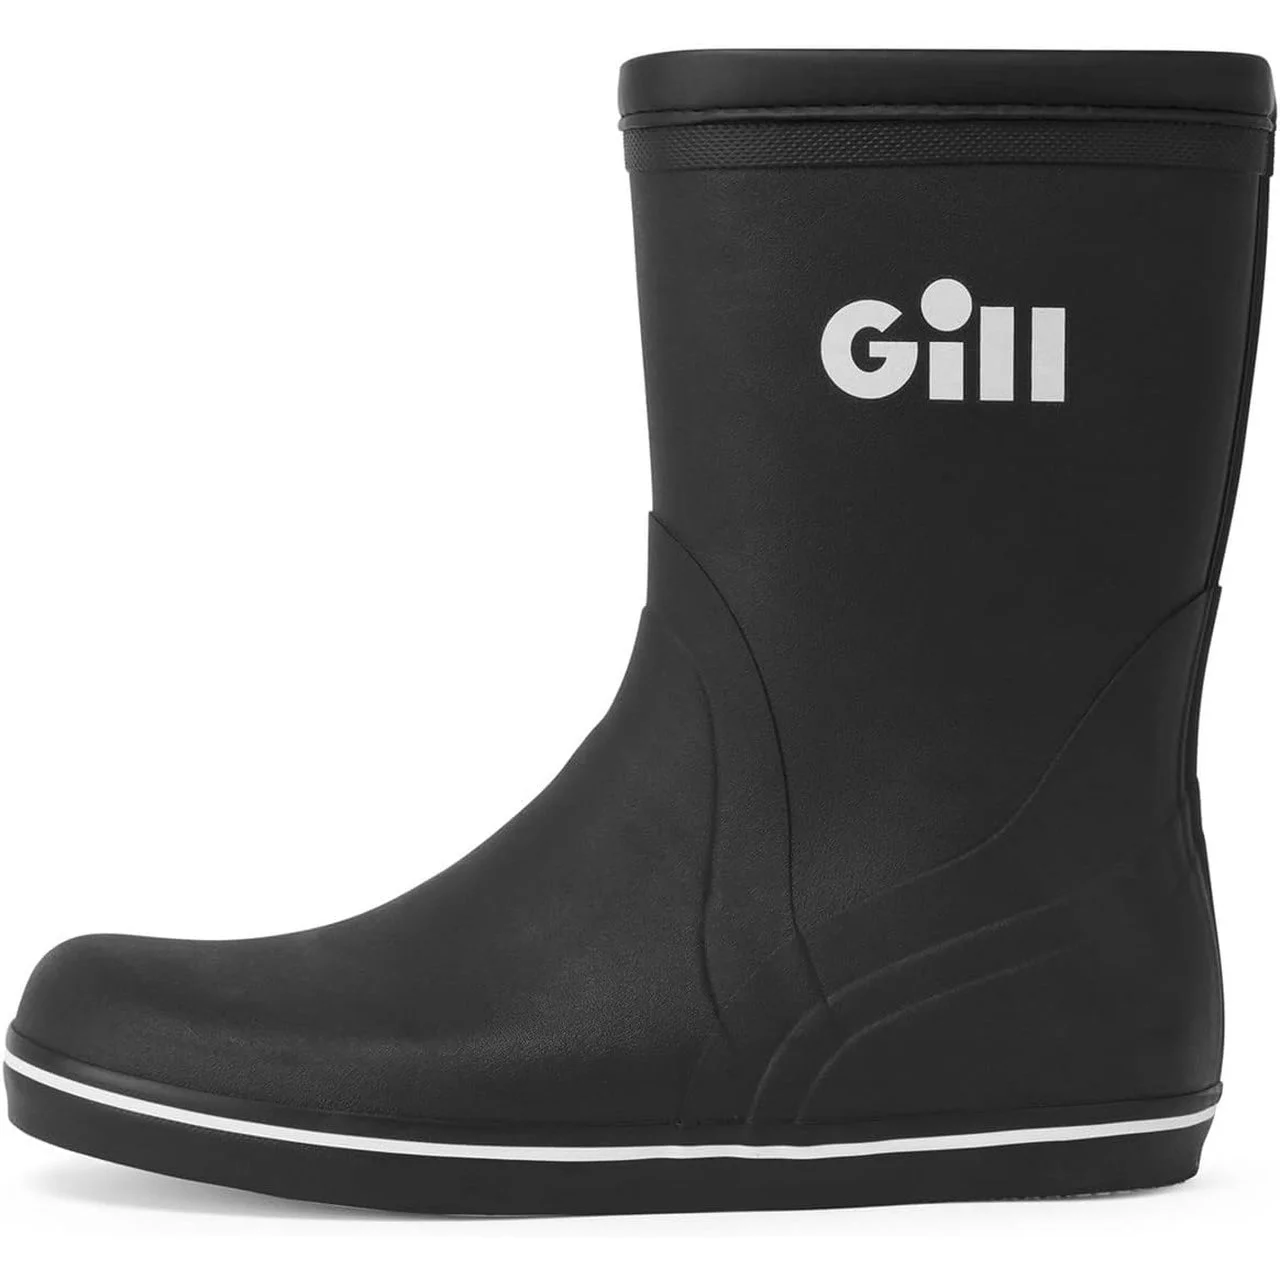 Gill (ギル) 917 ショート クルージング ブーツ ブラック